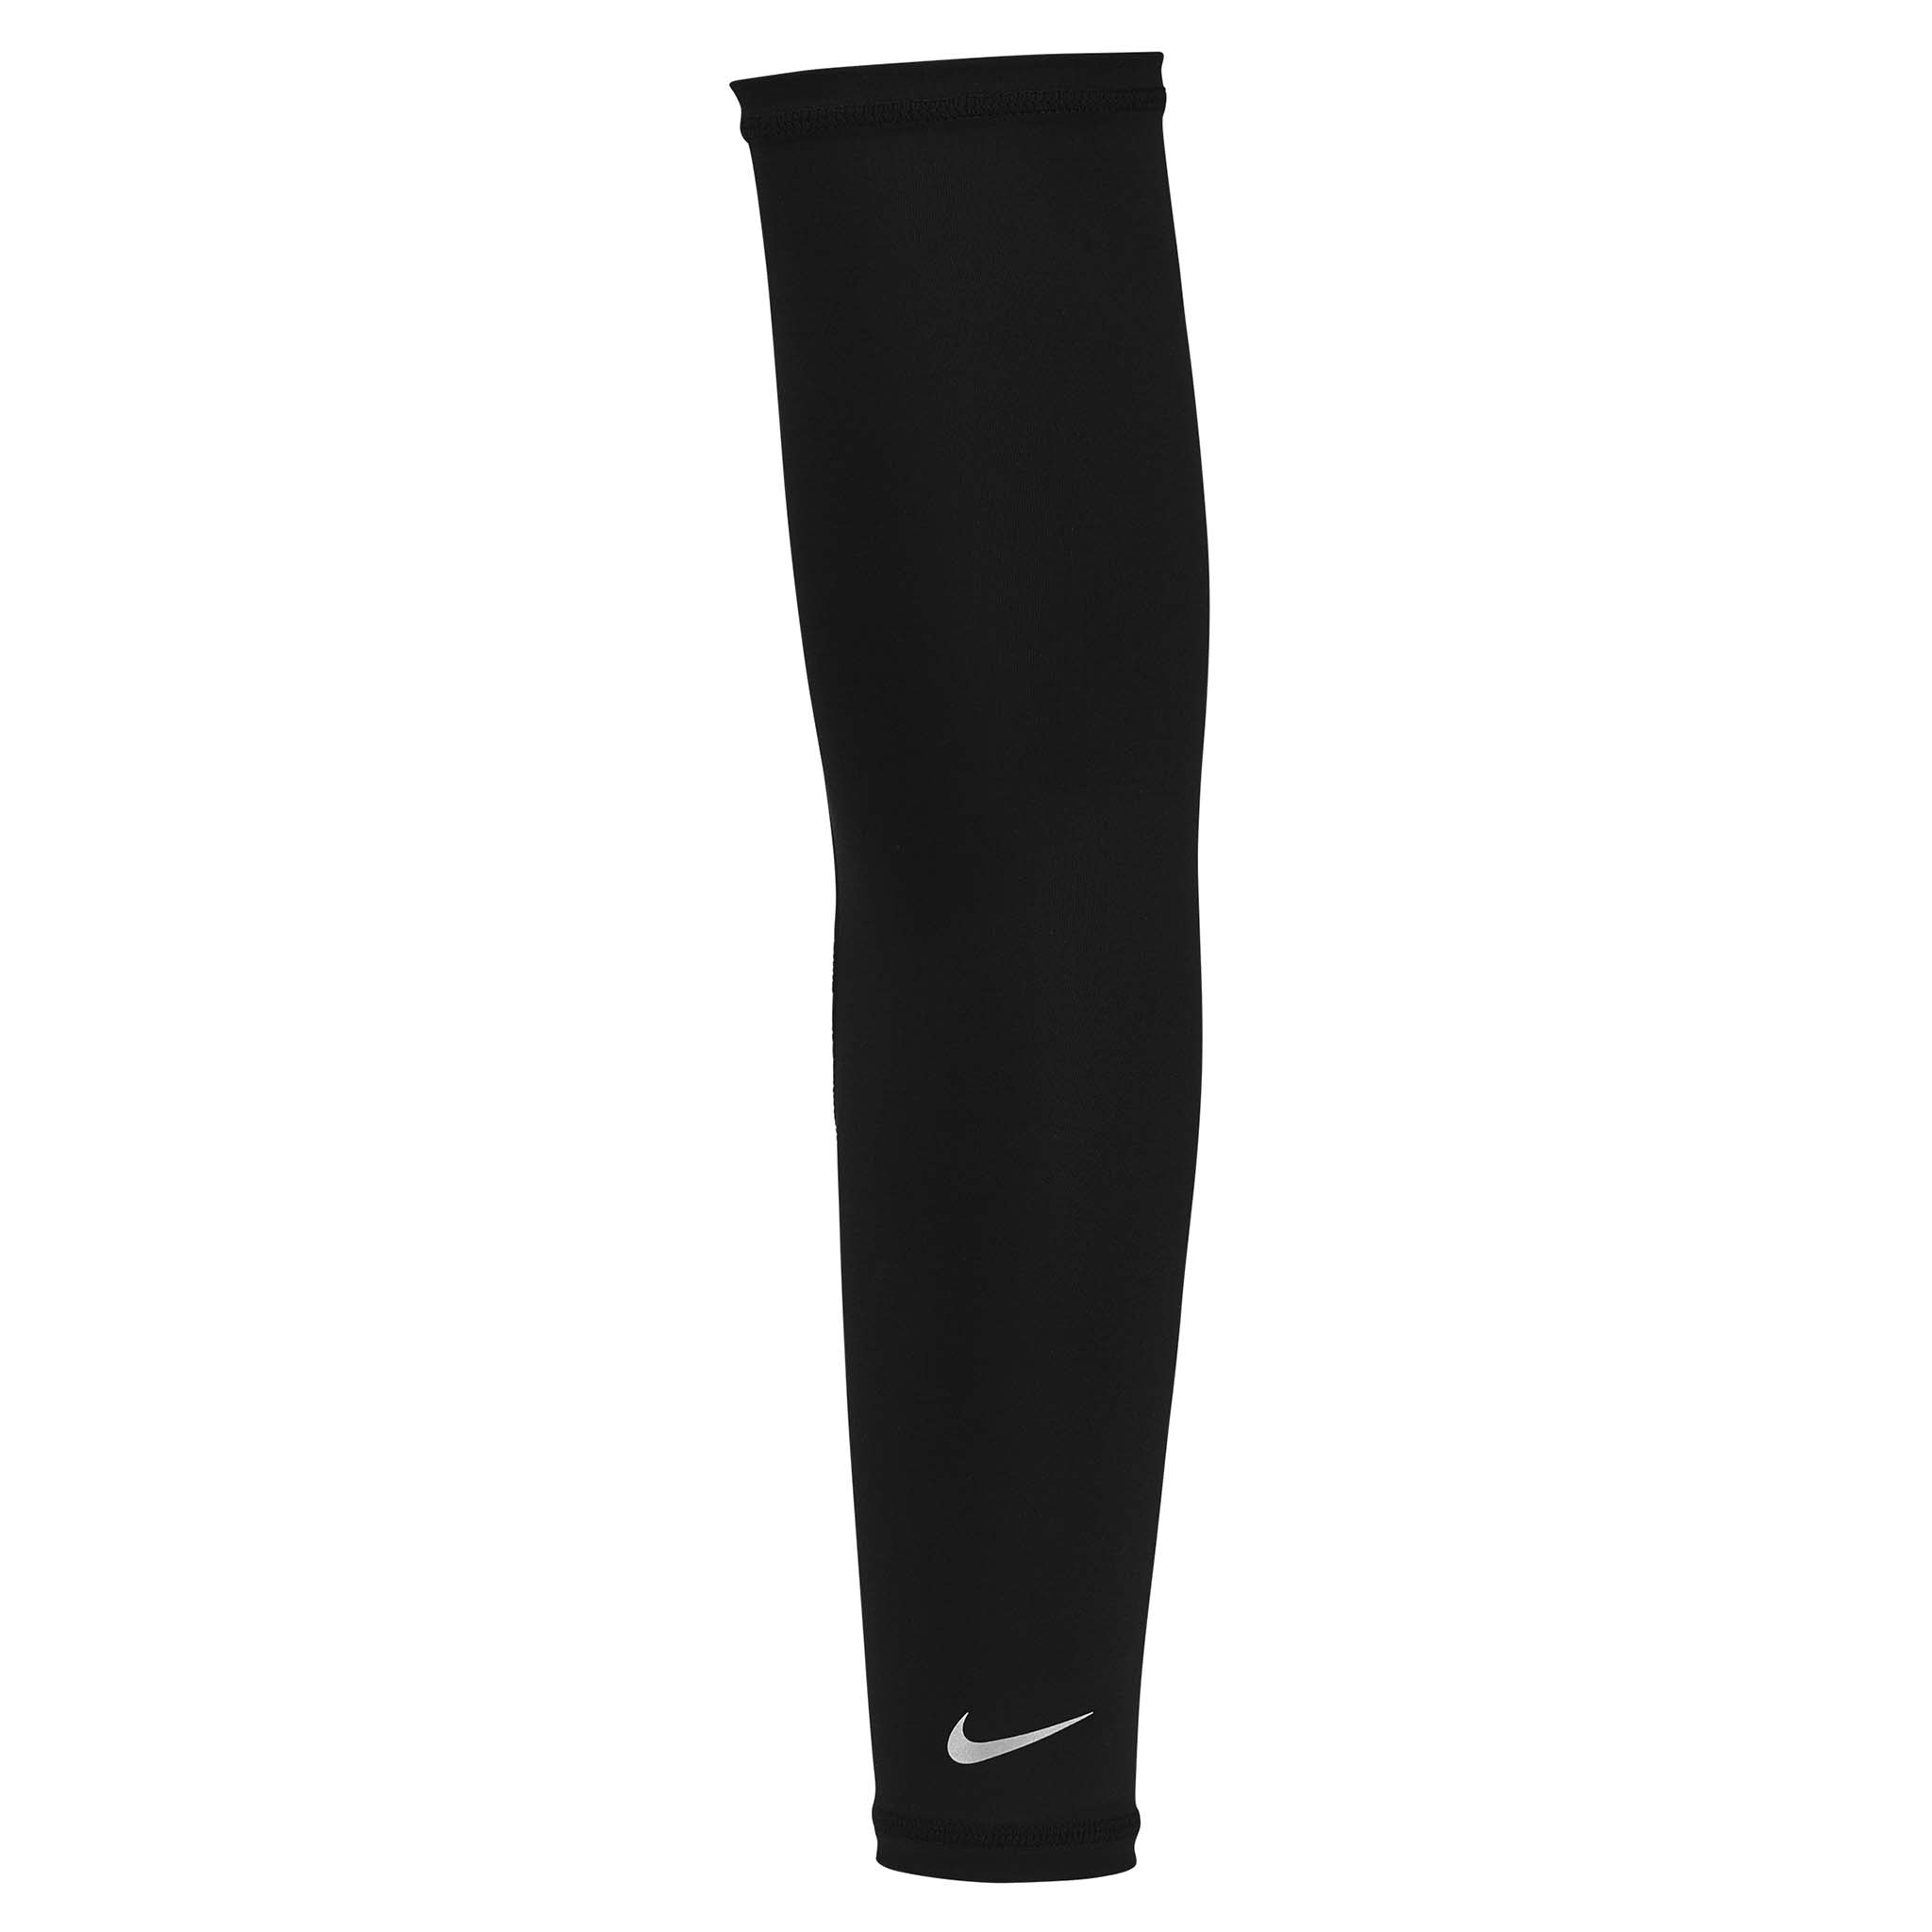 Nike Arm Sleeve's